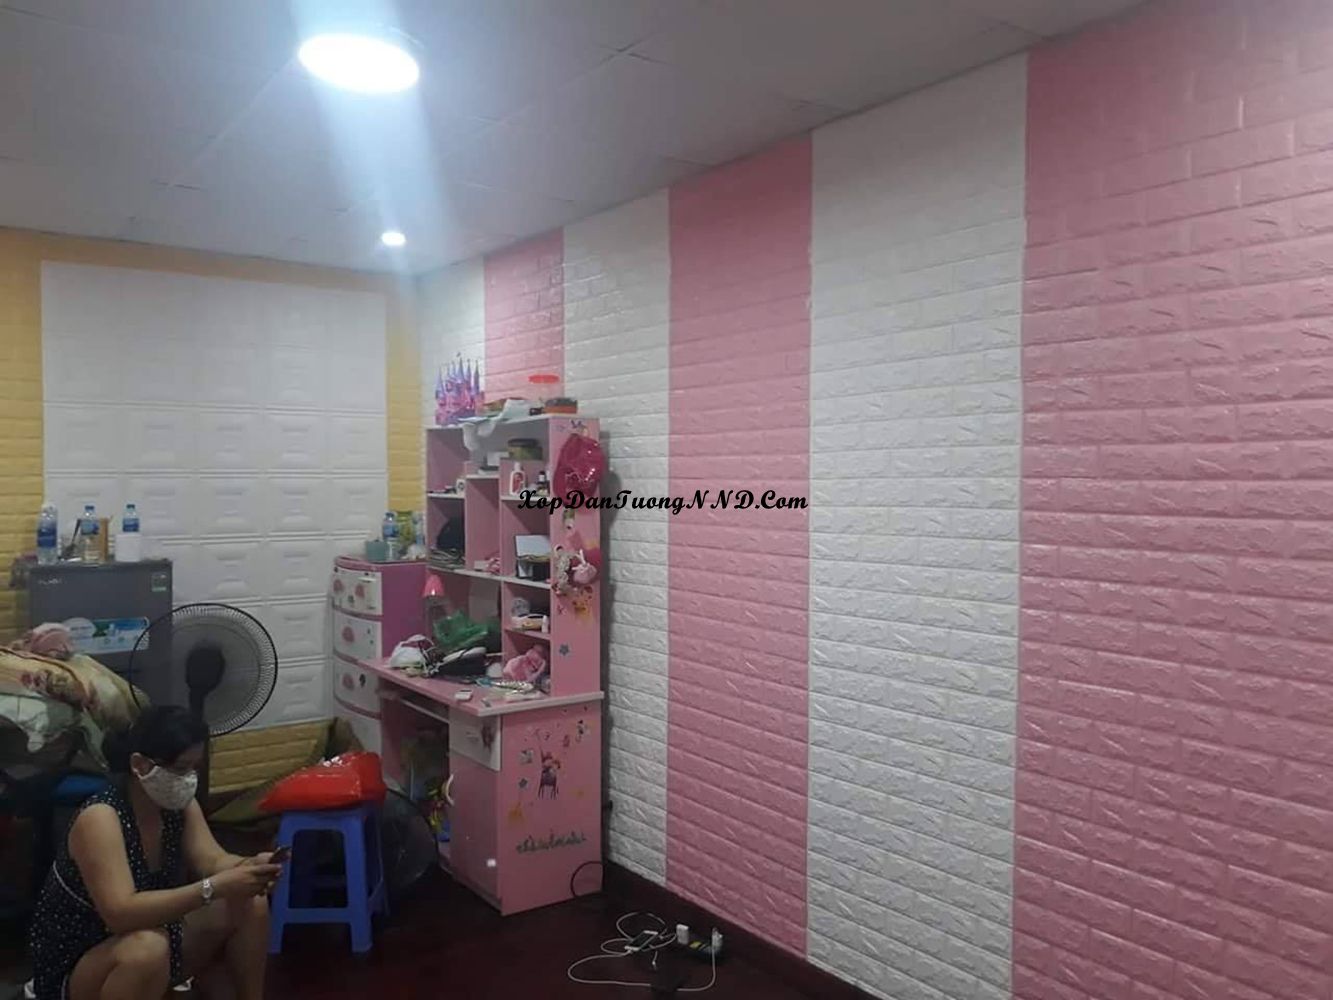 Xốp dán tường giả gạch hồng kết hợp với màu trắng